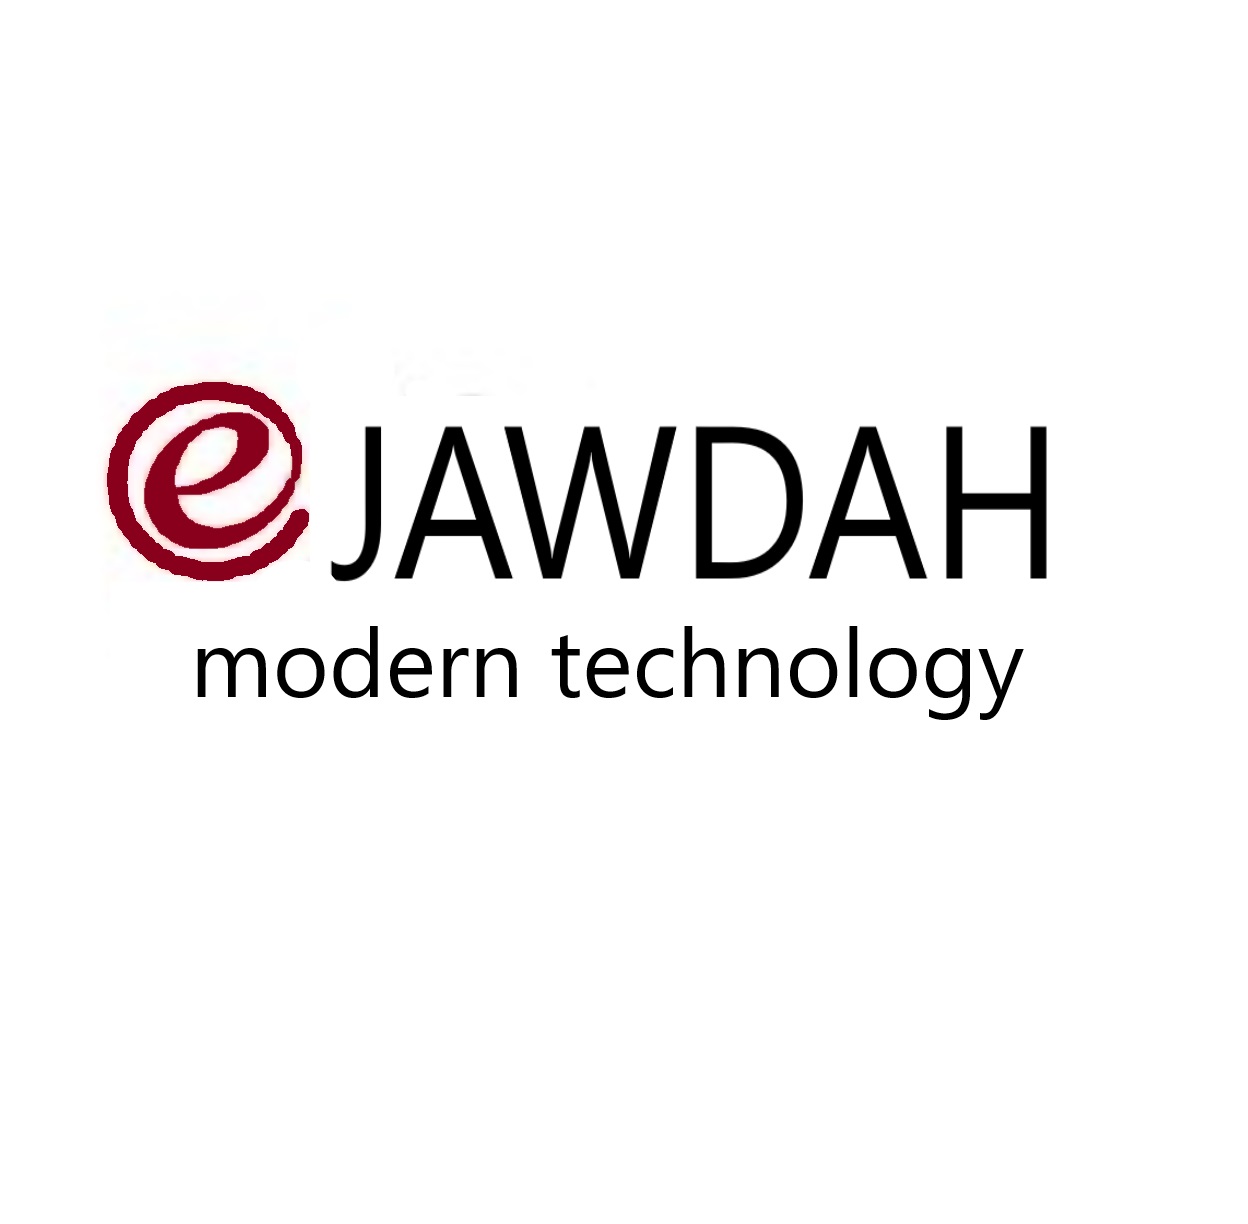 E-jawdah